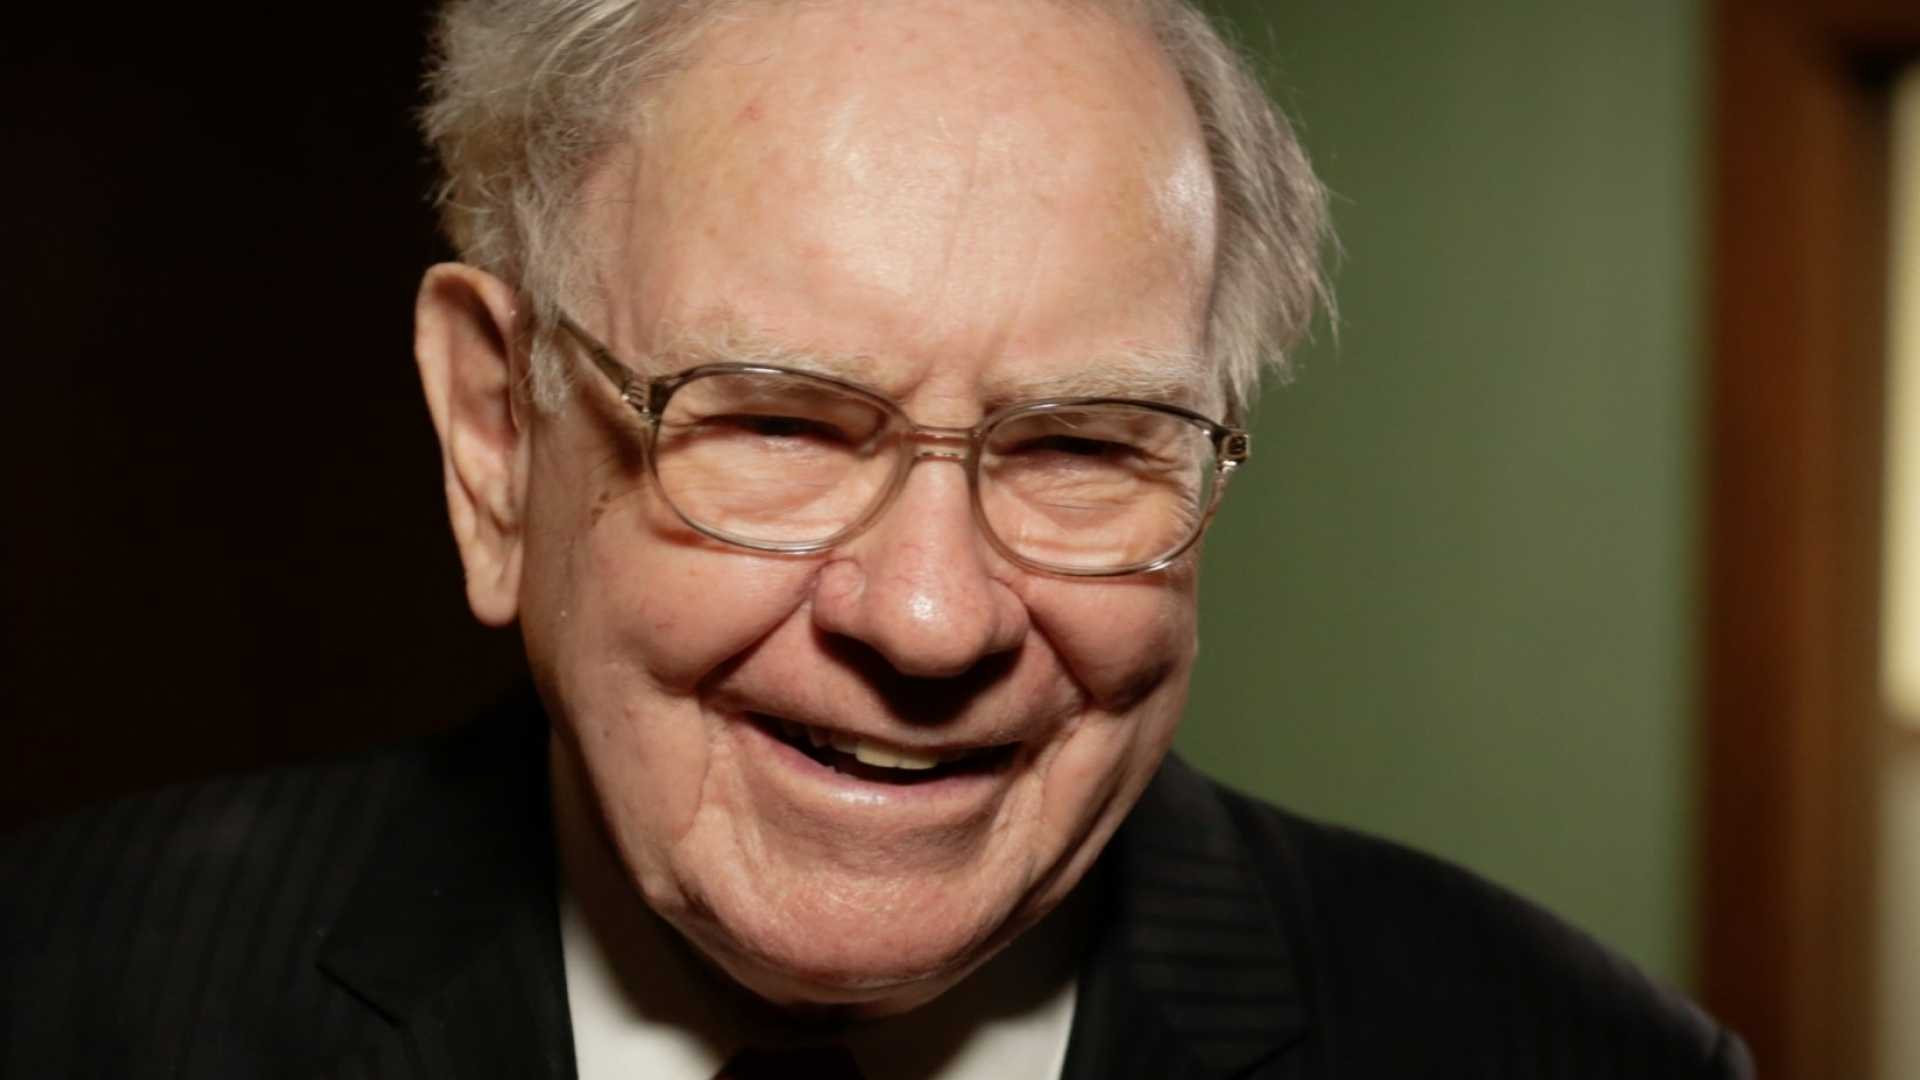 Chỉ có thể là Warren Buffett: ‘Phát’ 870 triệu USD cho người nghèo ngay sát dịp Giáng sinh để có cái Tết ấm no - Ảnh 3.